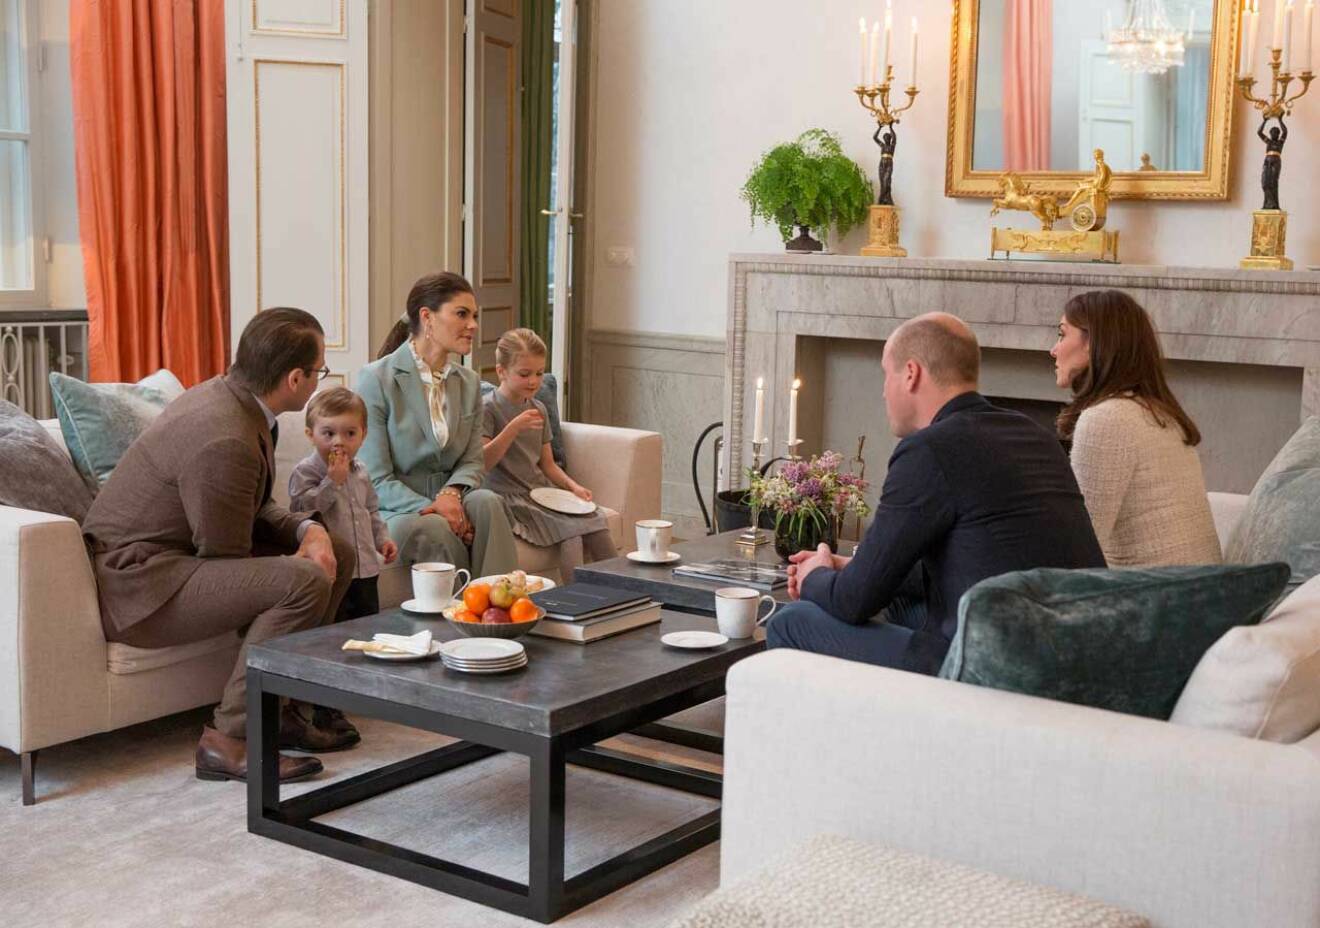 Trivsamt i soffan när kronprinsessan Victoria och prins Daniel bjöd hem prins William och hertiginnan Kate till Haga på afternoon tea.